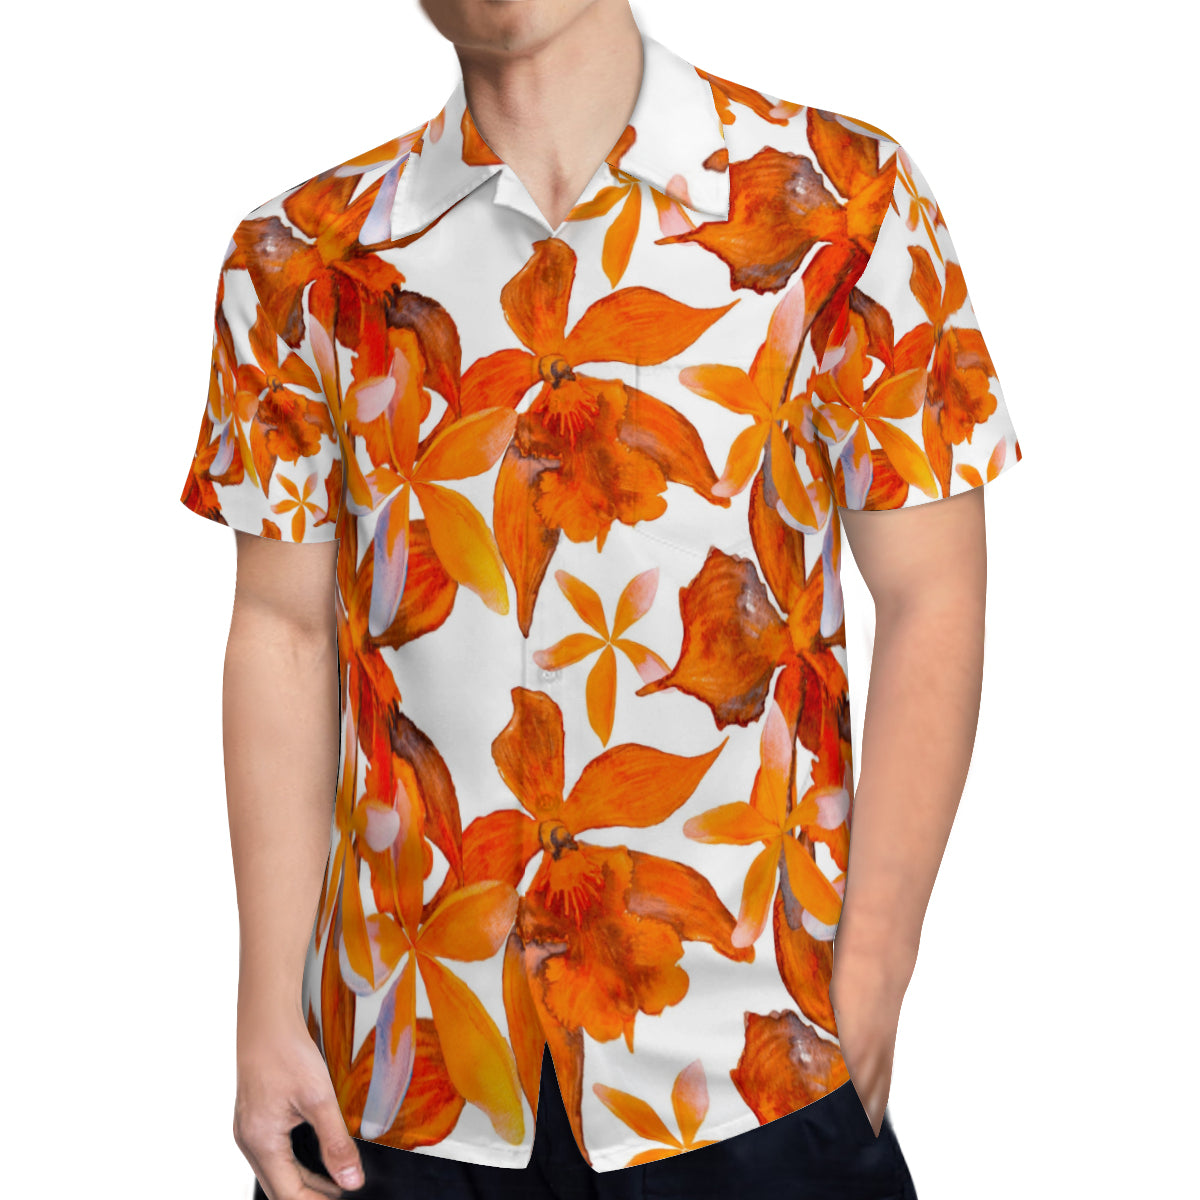 Hawaiian shirt - Orange and white flower design